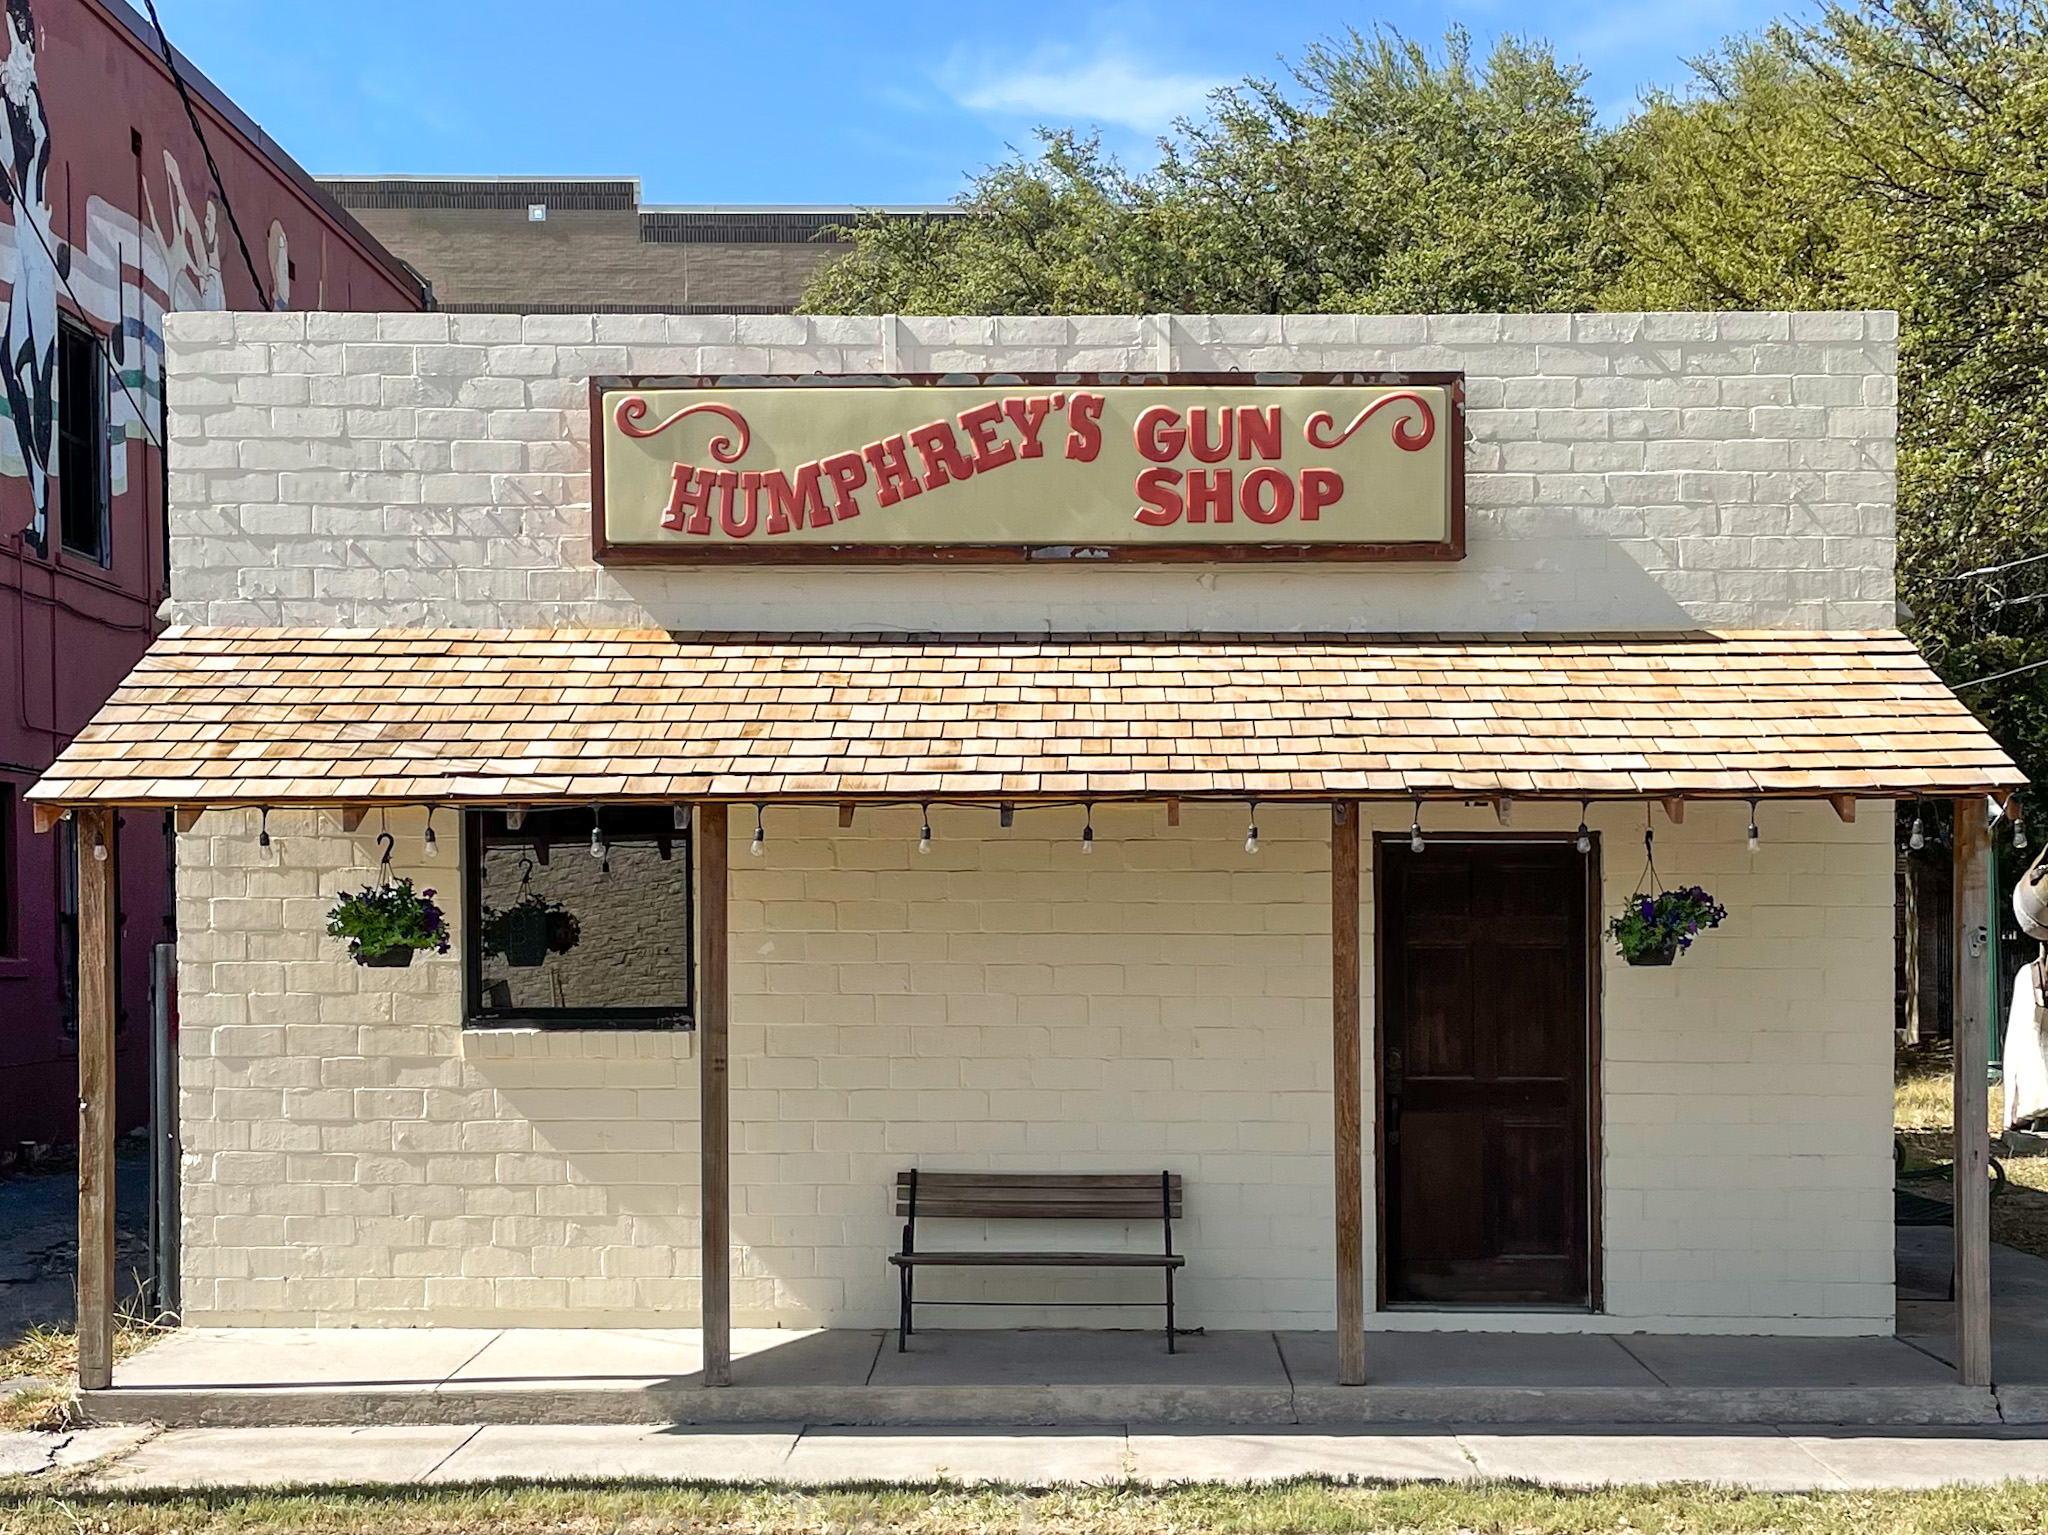 Humphreys' Gun Shop, located in Downtown Del Rio